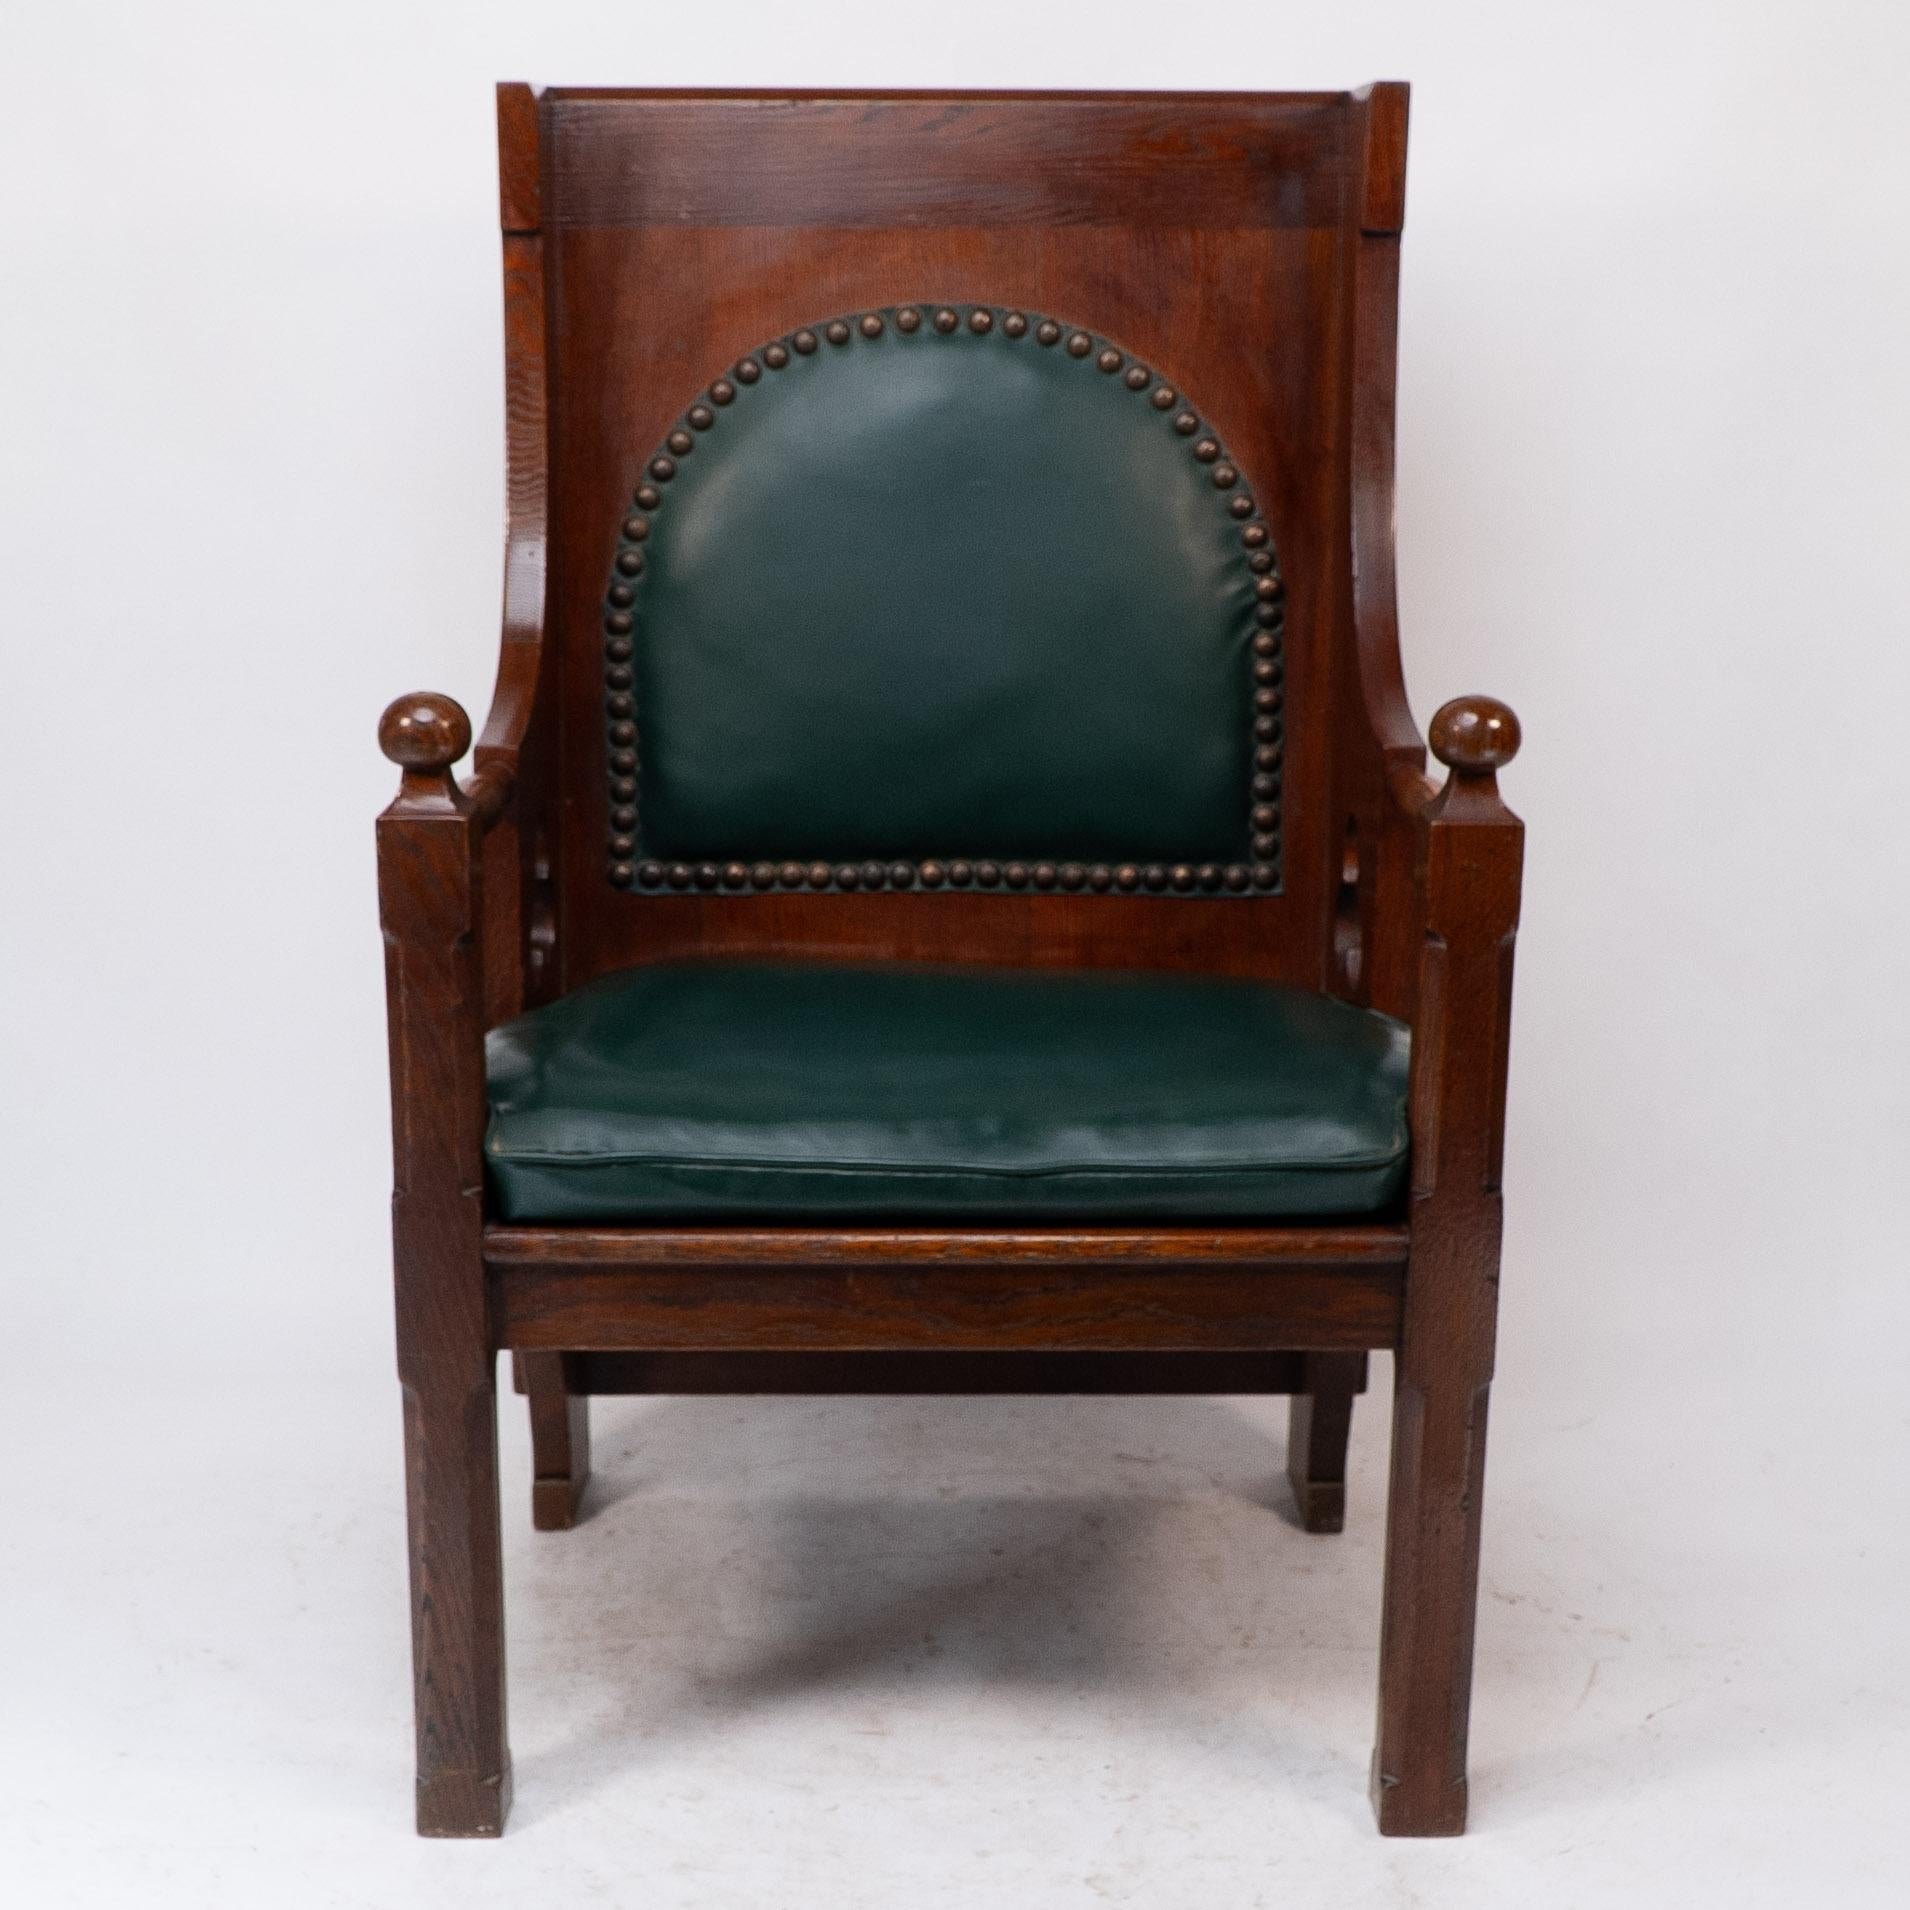 Liberty und Co. Eine gute Qualität Arts and Crafts Eiche Sessel, mit original Liberty Label auf der Unterseite.